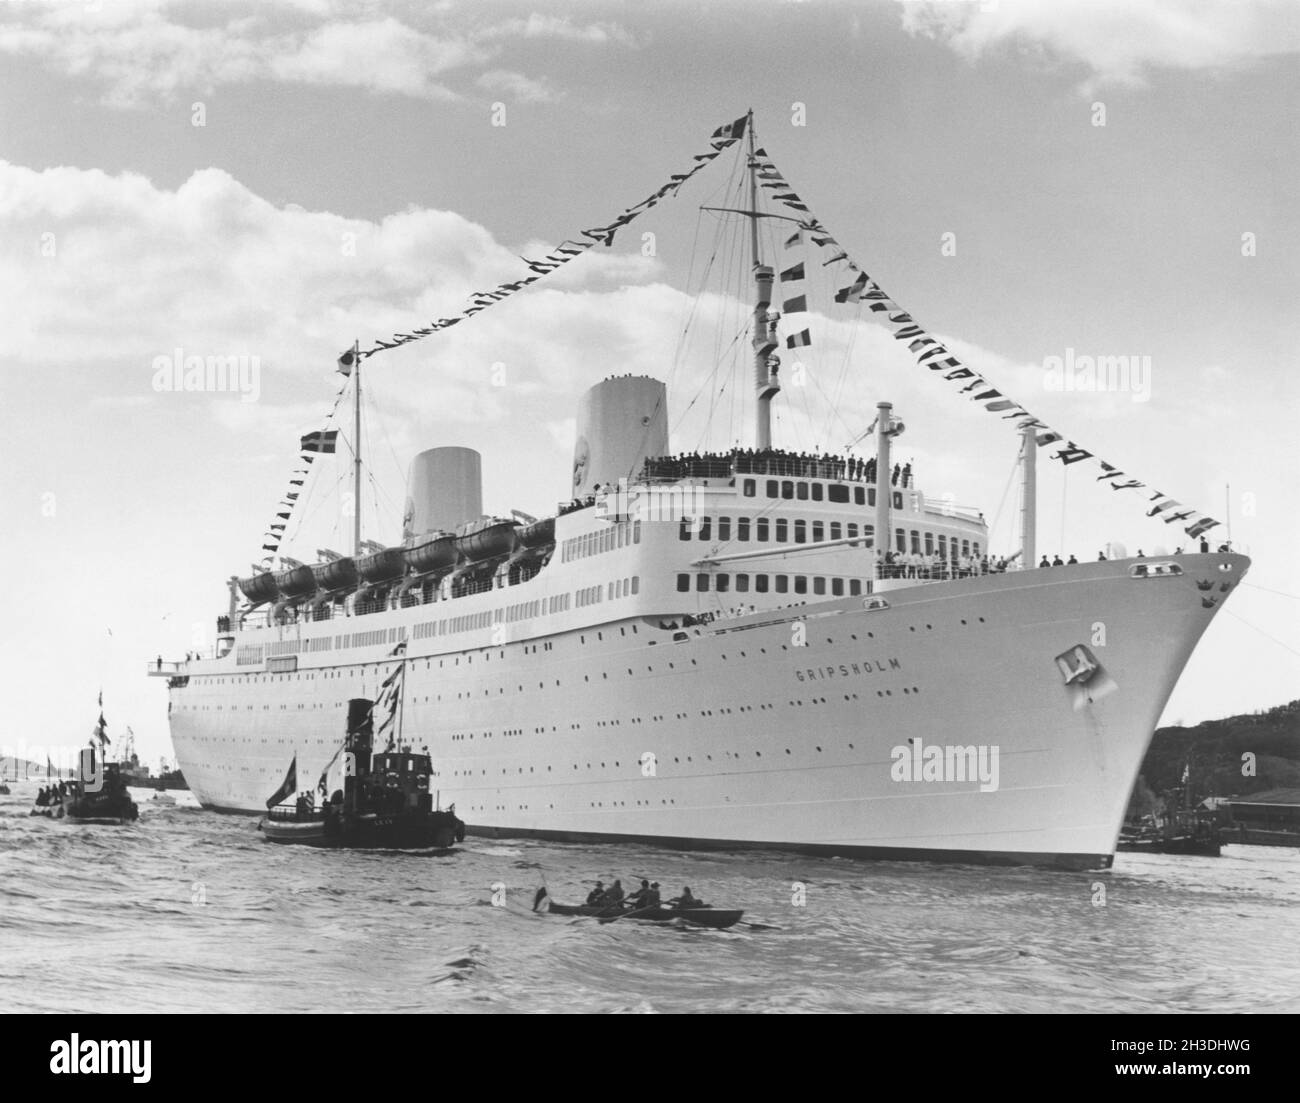 M/S Gripsholm. Una nave passanger svedese è stata lanciata l'8 aprile 1956 a Genua Italia e consegnata alla linea svedese-americana il 2 aprile 1957. In quel giorno, nel porto di Goteborg. Il primo viaggio fu effettuato il 14-15 1957 maggio da Gothenburg a New York. La nave affondò nelle acque del Capo di buona speranza il 6 luglio 2001 durante un traino. La profondità su cui affondò la nave è di circa 4200 metri. Foto Stock